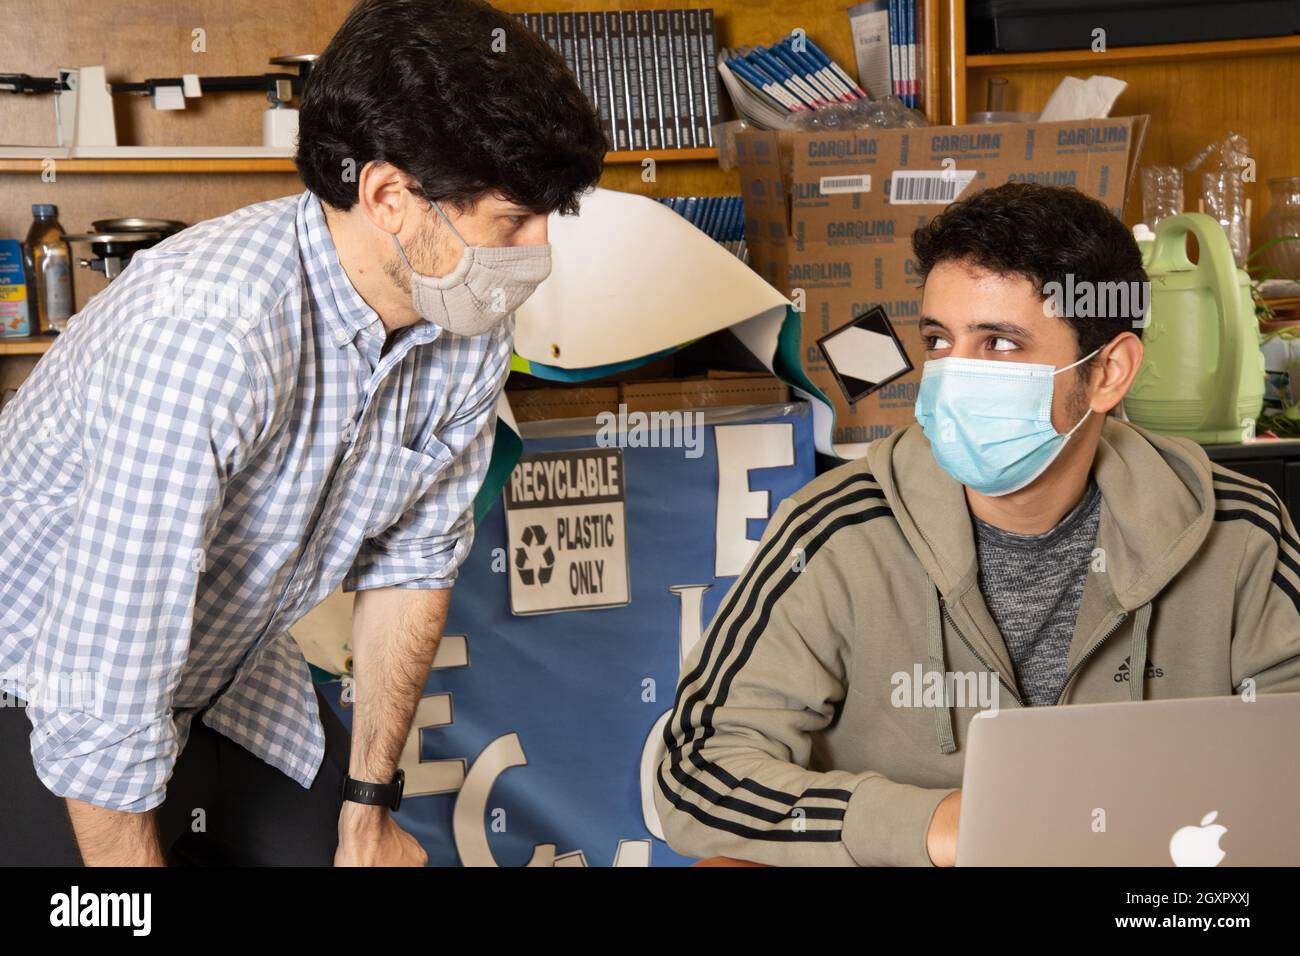 Bildung High School Klassenzimmer Szene, männlicher Lehrer hört männlichen Schüler, beide tragen Gesichtsmasken gegen Covid-19-Infektion zu schützen Stockfoto